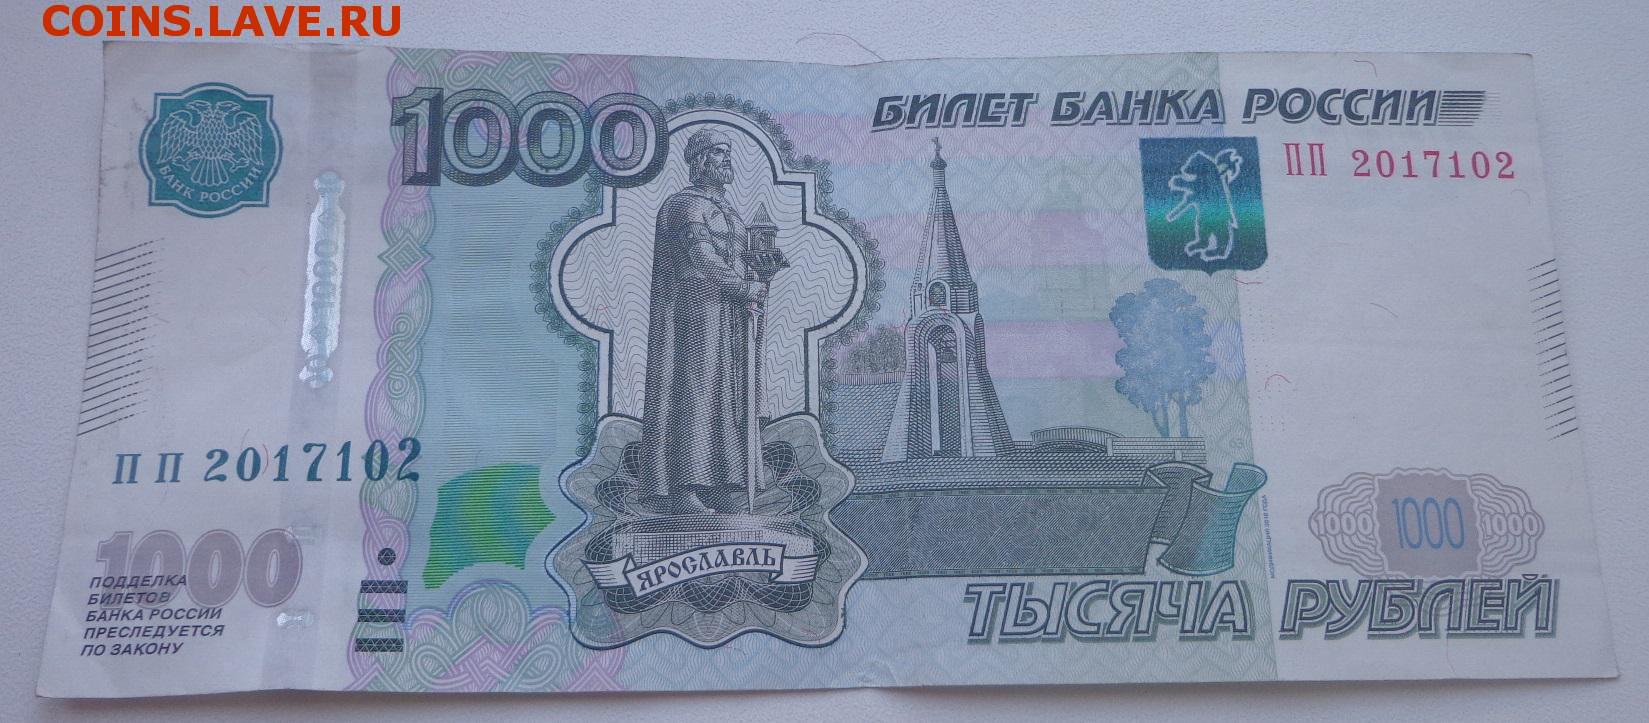 1000 рублей 2010. 1000 Рублей 2010 года герб серого цвета.